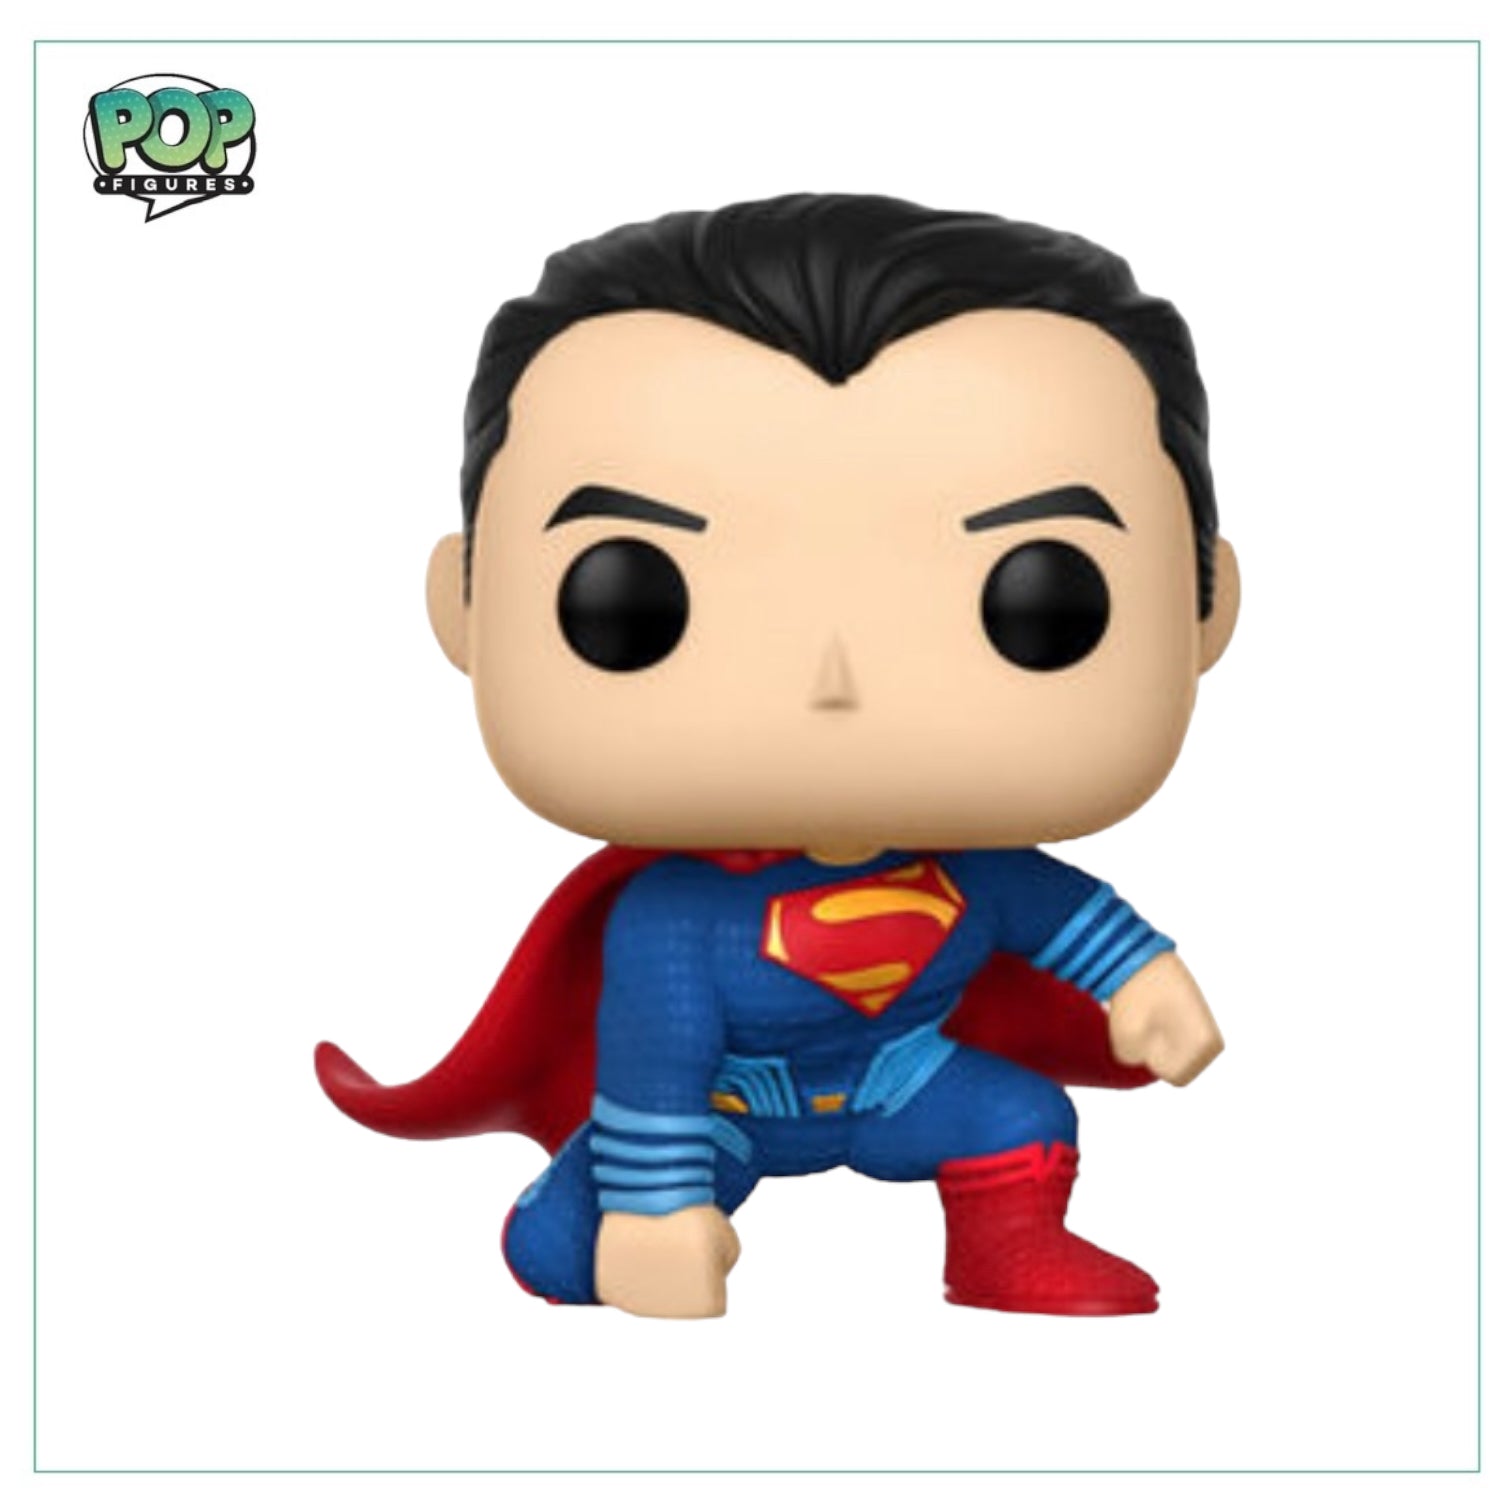 Superman #207 Funko Pop! - Justice League